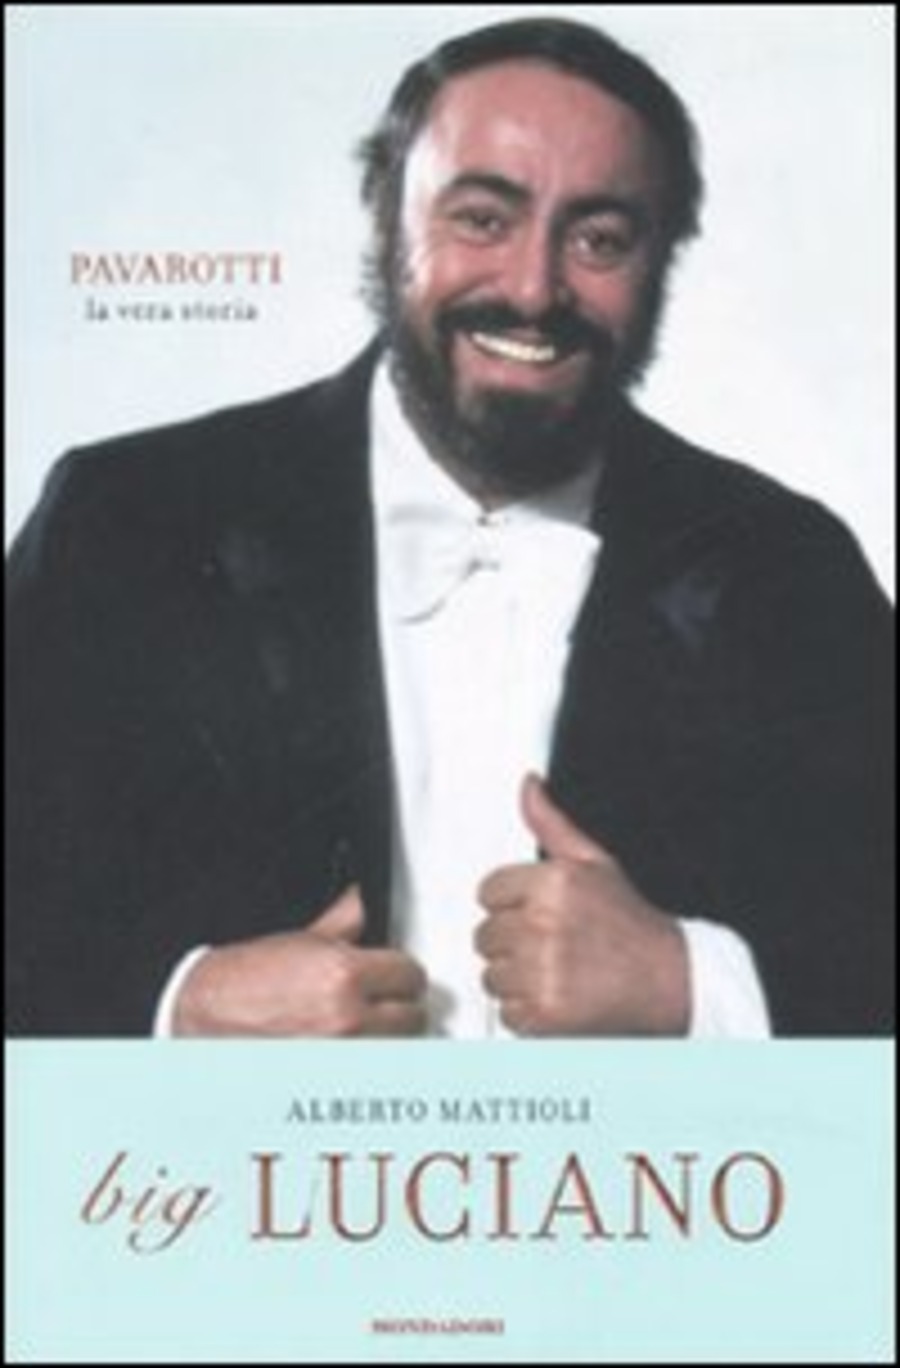 Big Luciano. Pavarotti, la vera storia